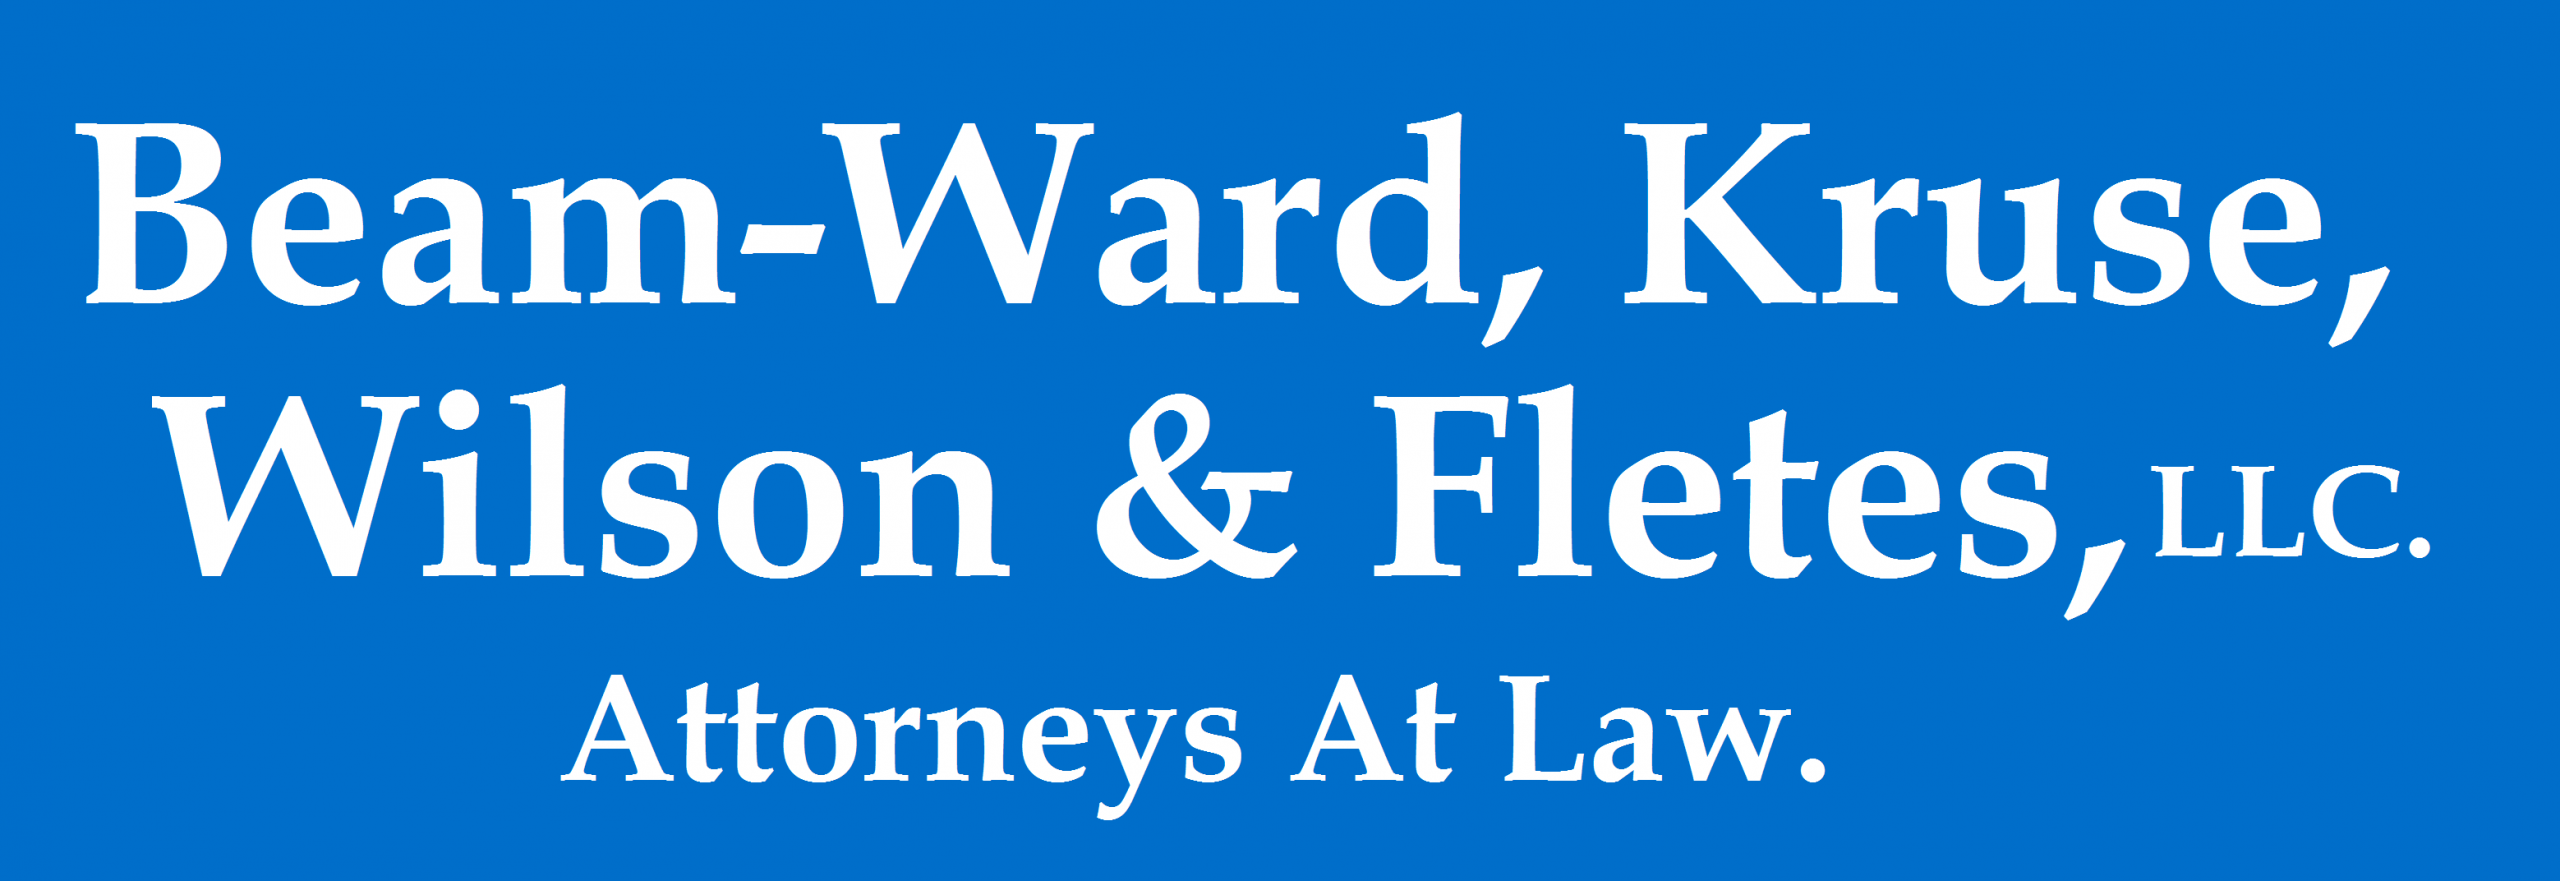 Beam-Ward, Kruse, Wilson & Fletes, LLC